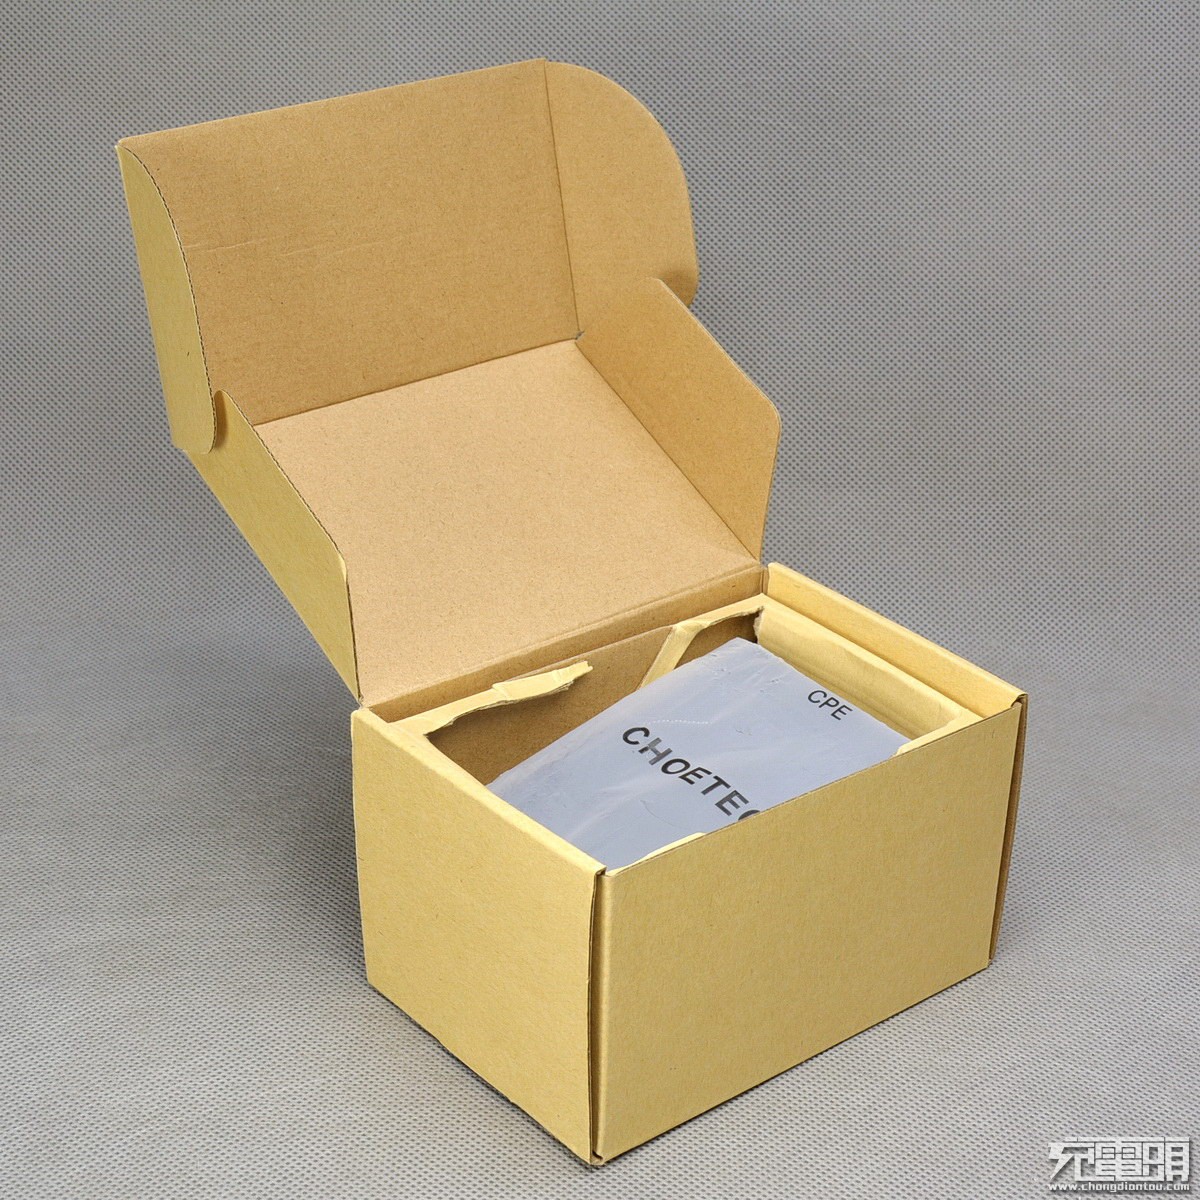 包装盒封套印刷内容全部为英文,背面应有多种认证标志,包括fcc,rohs